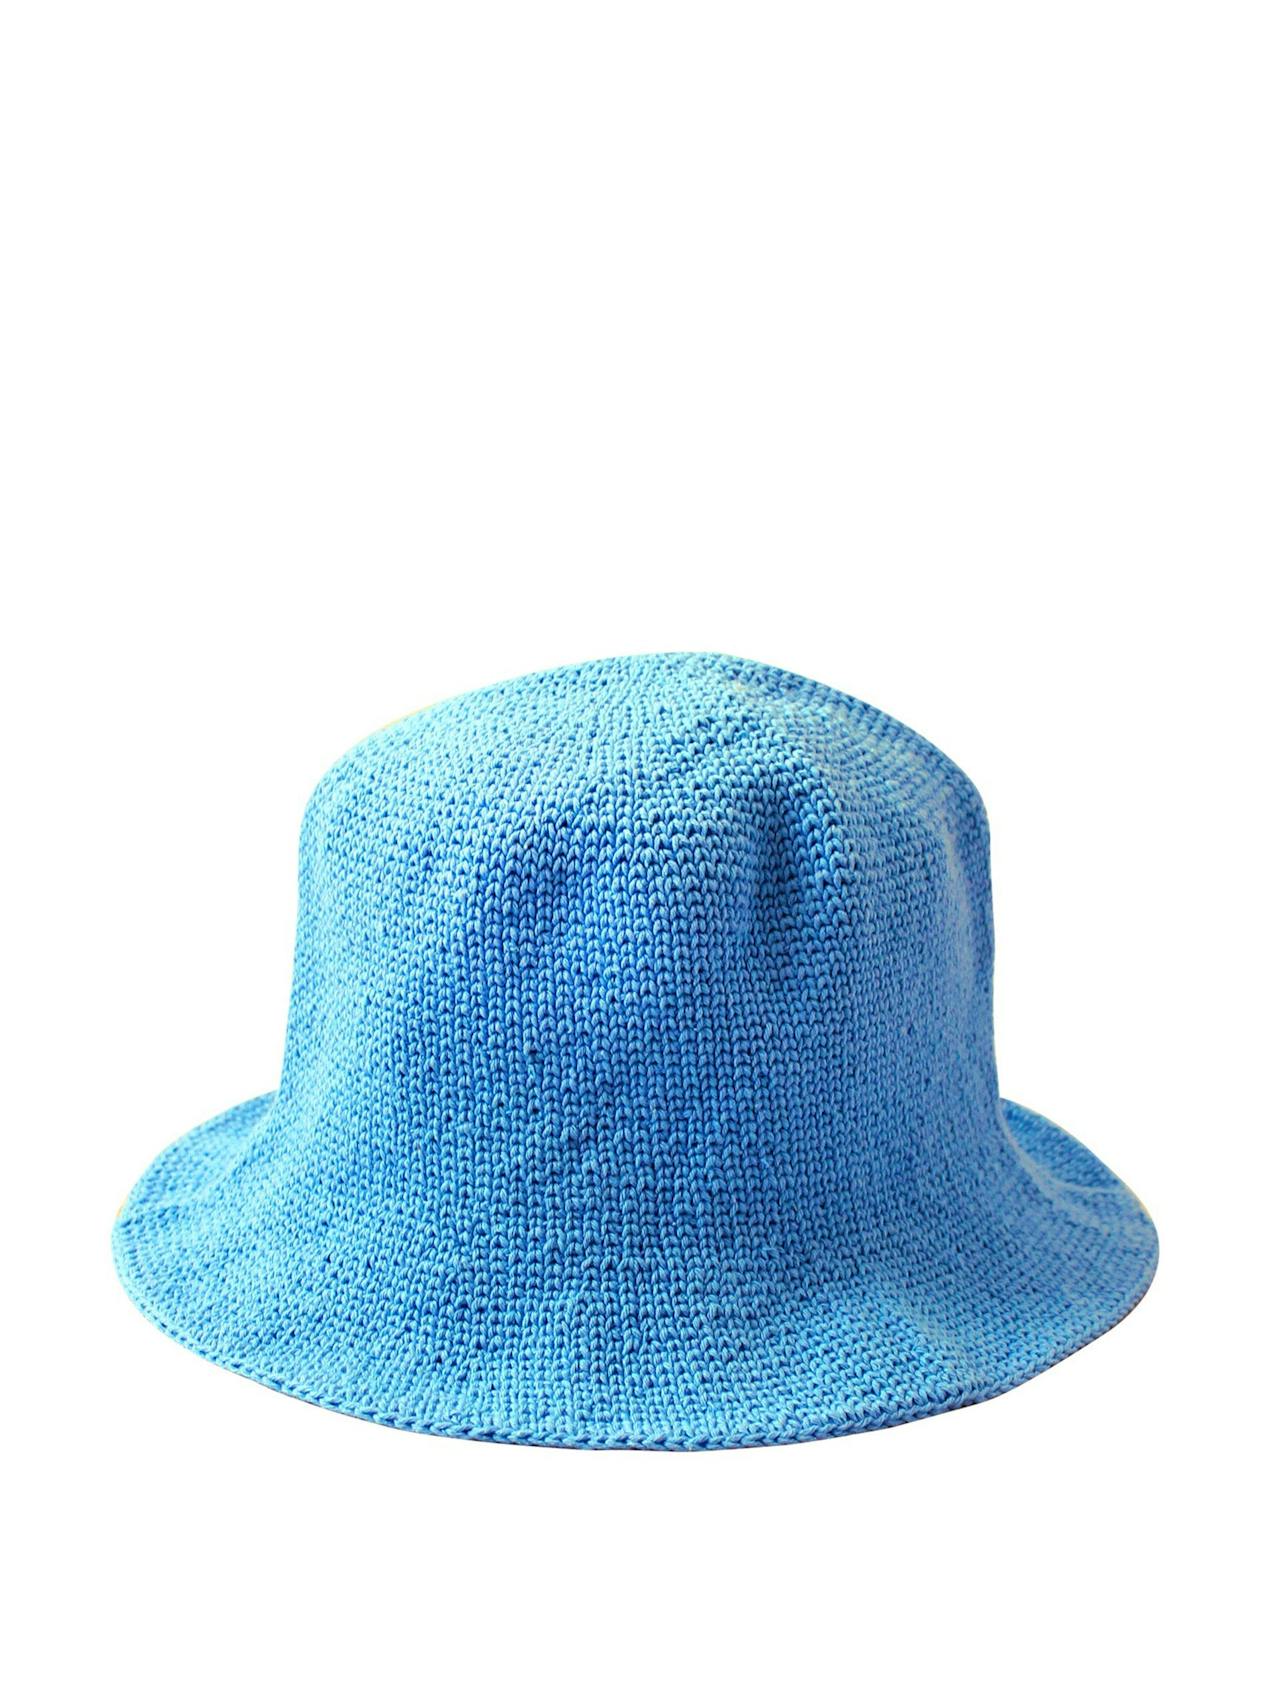 Florette crochet bucket hat in periwinkle blue